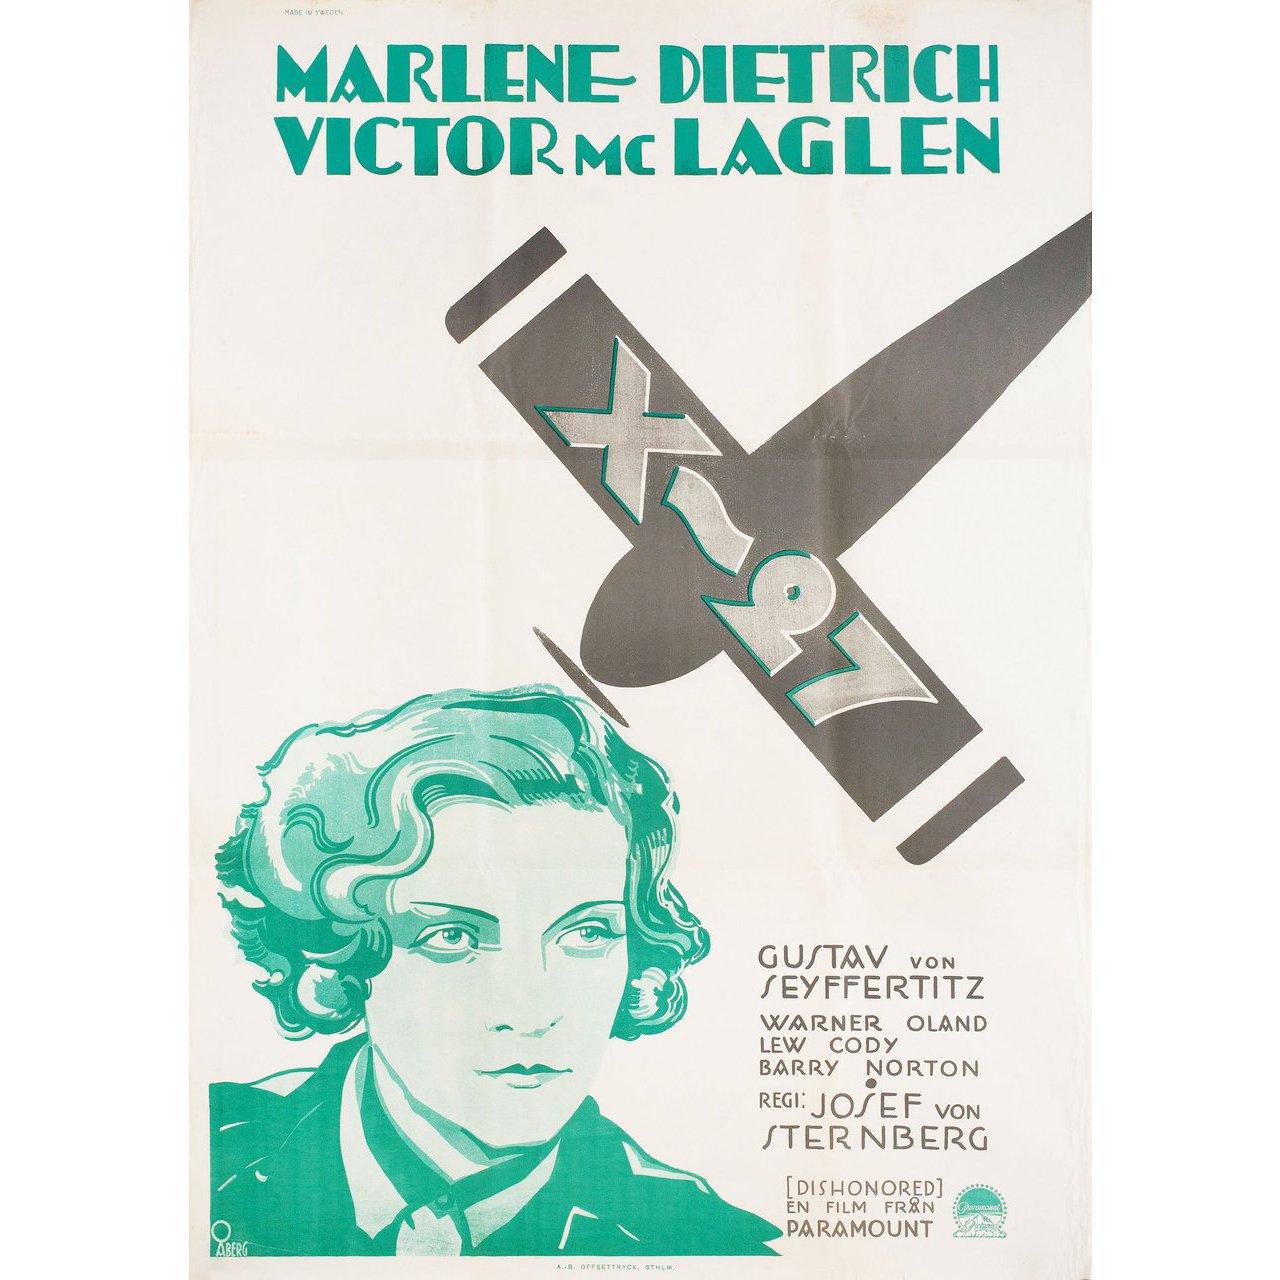 Original 1930s re-release Swedish B1 poster by Gosta Aberg for the film Dishonored directed by Josef von Sternberg with Marlene Dietrich / Victor McLaglen / Gustav von Seyffertitz / Warner Oland. Very good-fine condition, folded. Many original